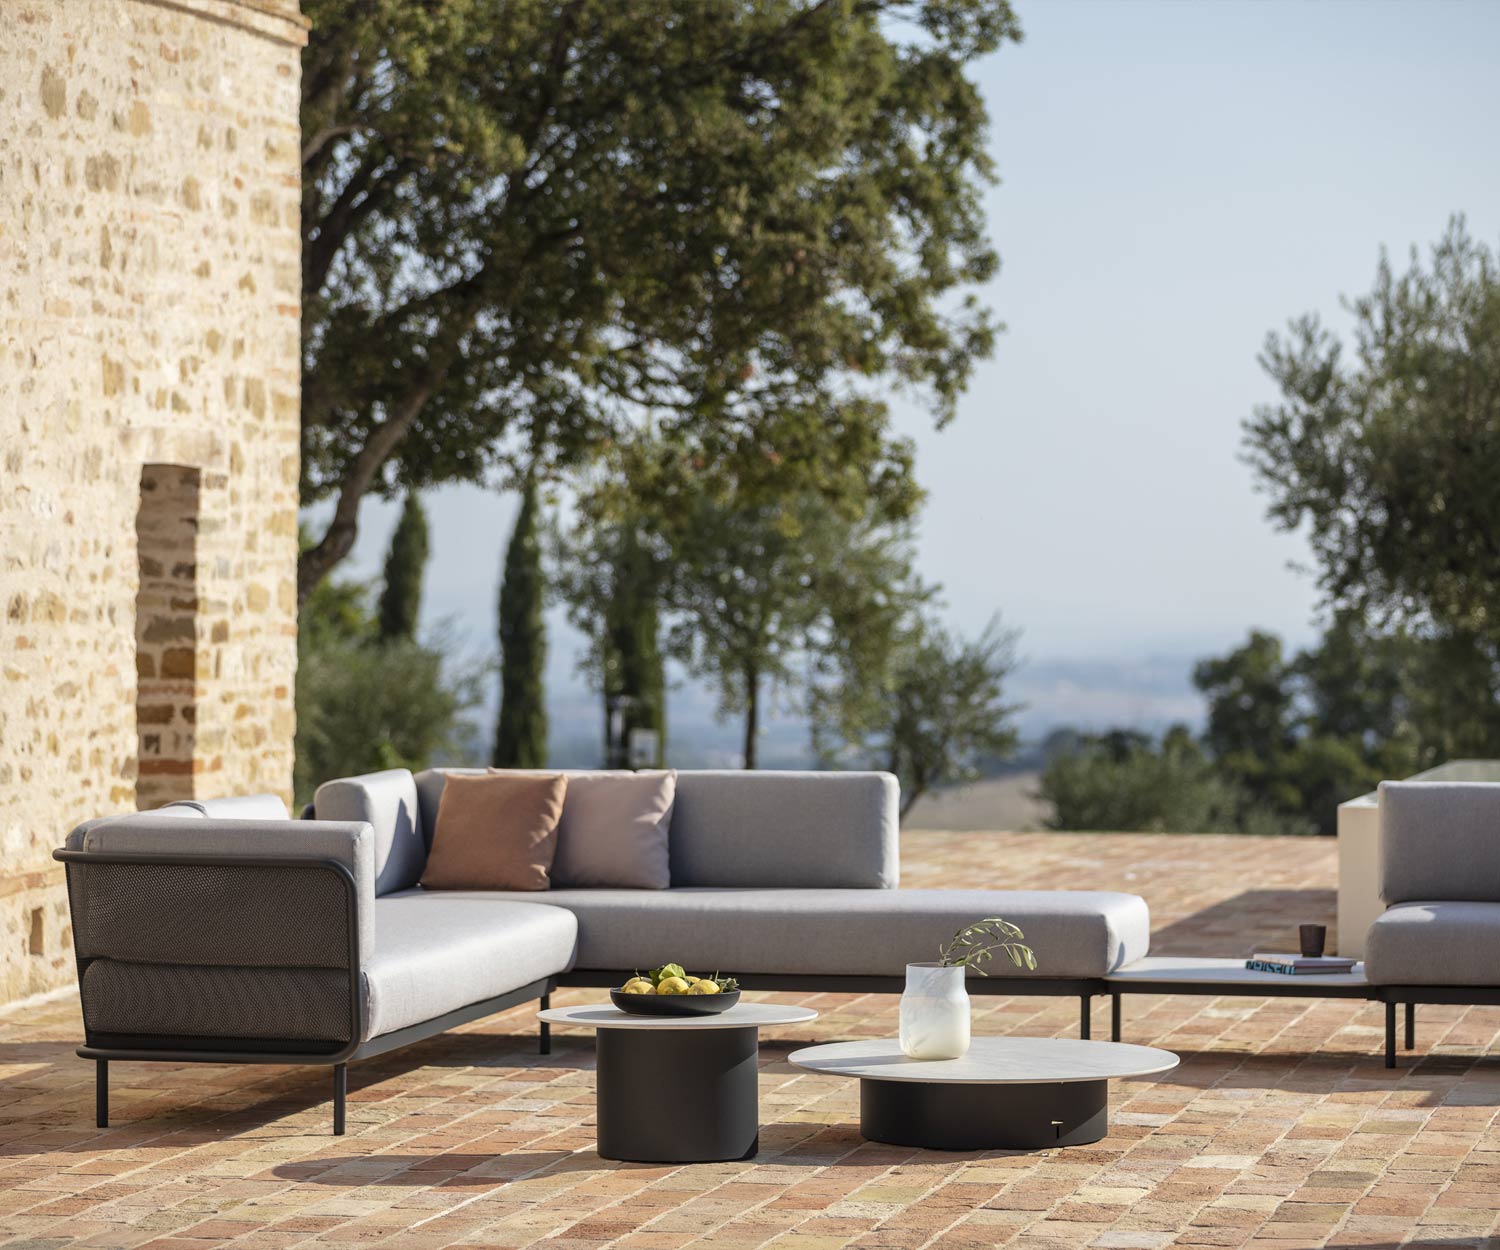 Design tuinbank Baza van Todus op een terras in mediterraan klimaat